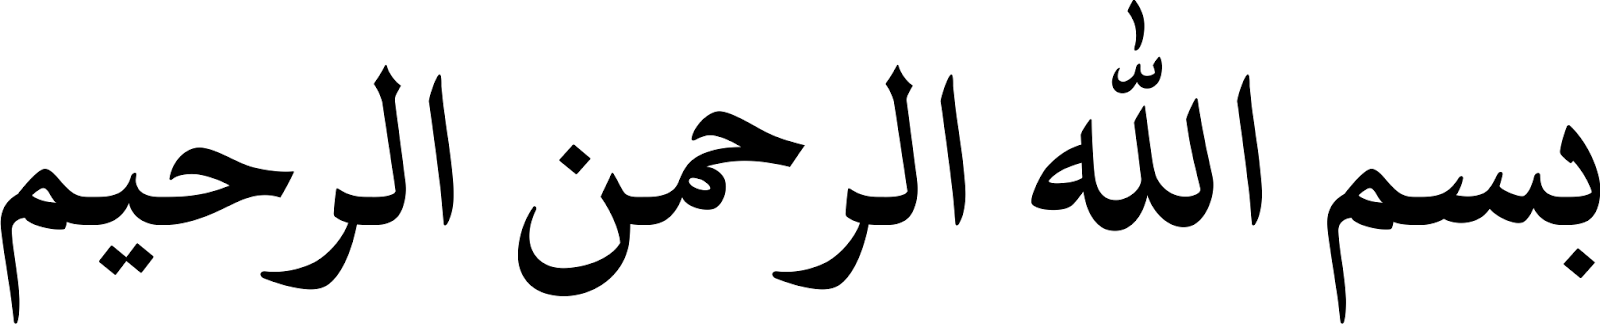 Манга на арабском. Бисмиллаҳир роҳманир. Истиаза и басмала. Басмала на арабском. Истиаза и басмала на арабском.